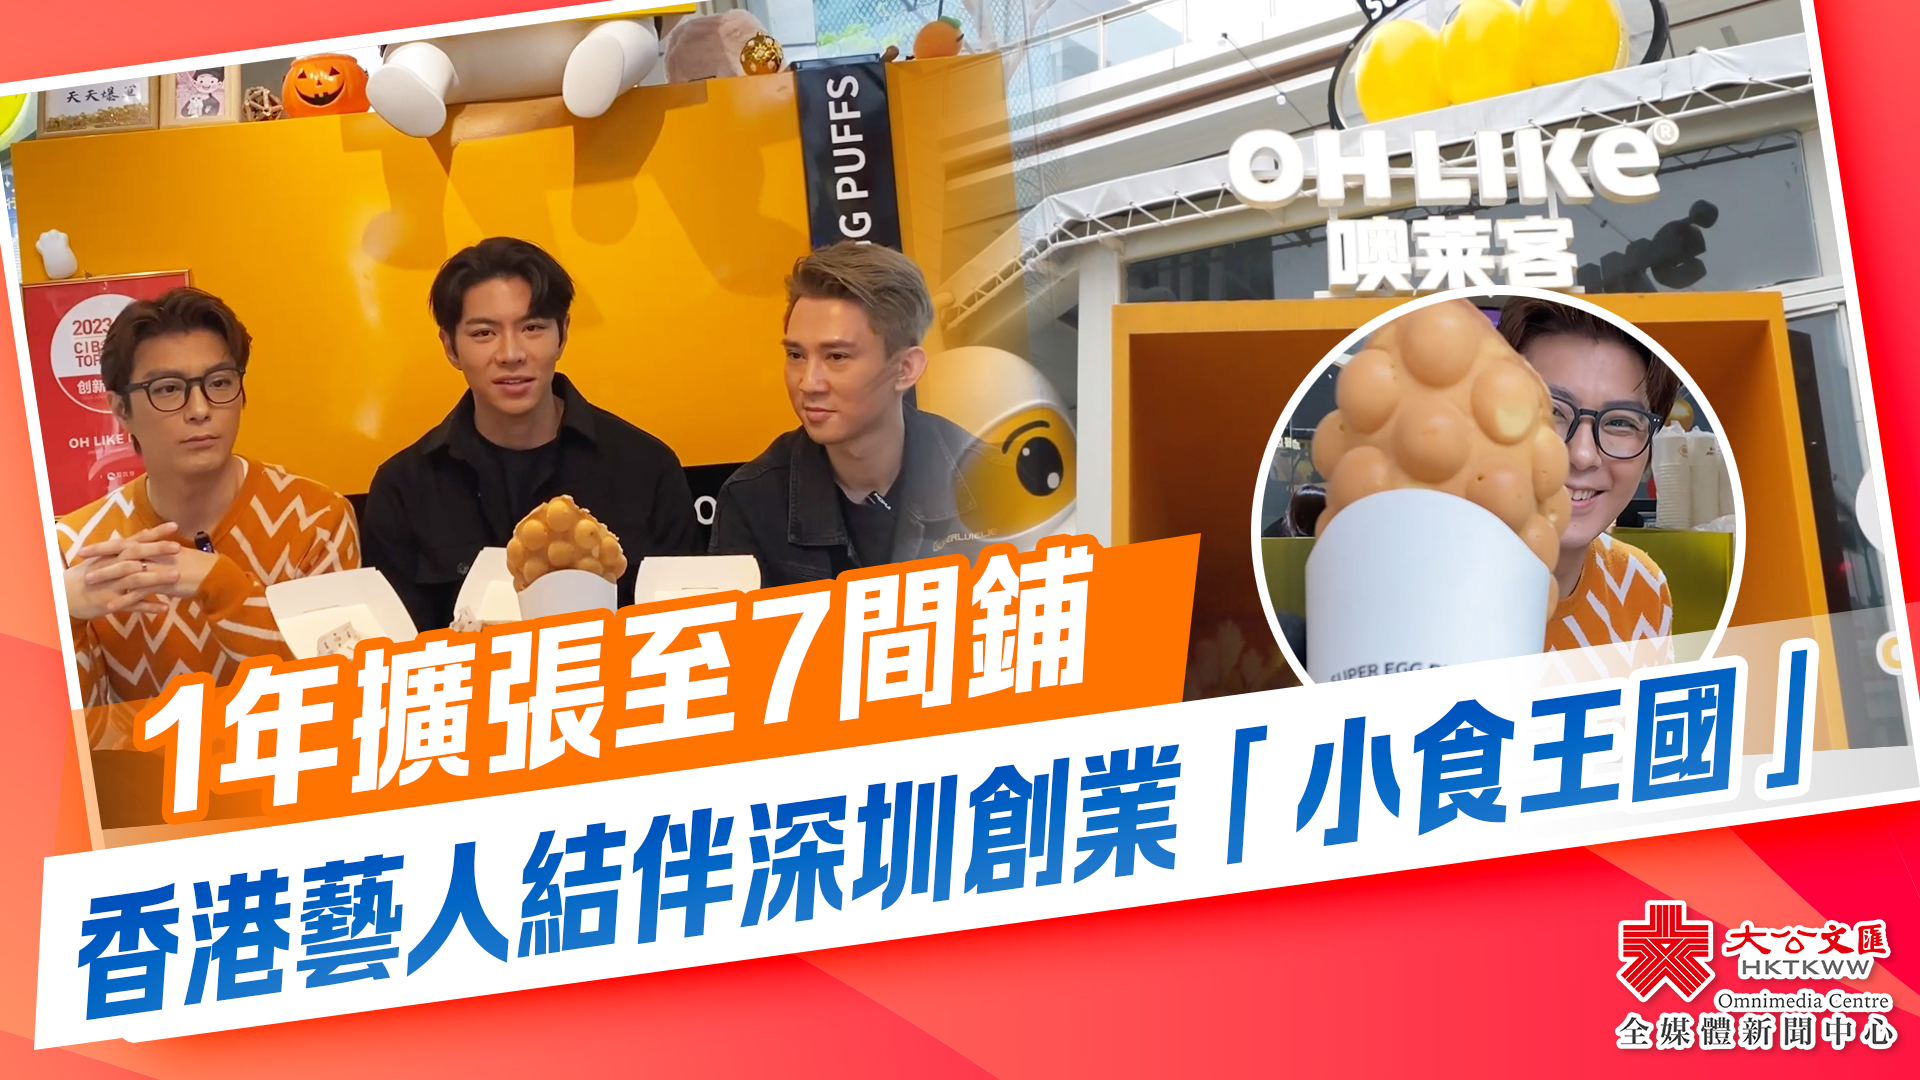 （有片）1年擴張至7間鋪　香港藝人結伴深圳創業「小食王國」